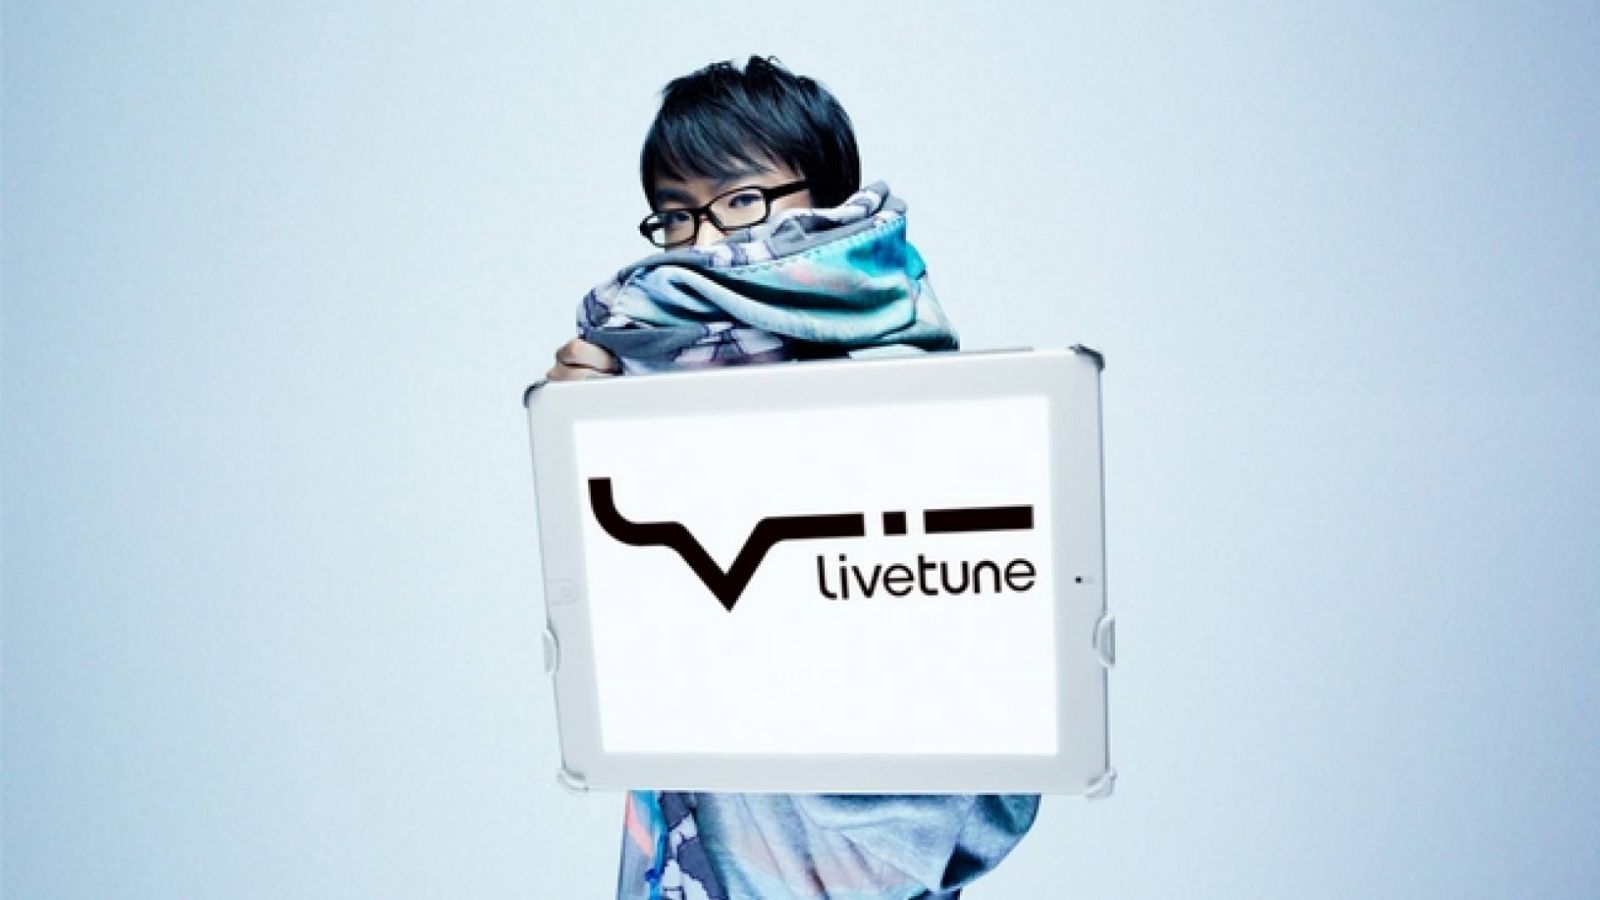 To, novo álbum de livetune © livetune